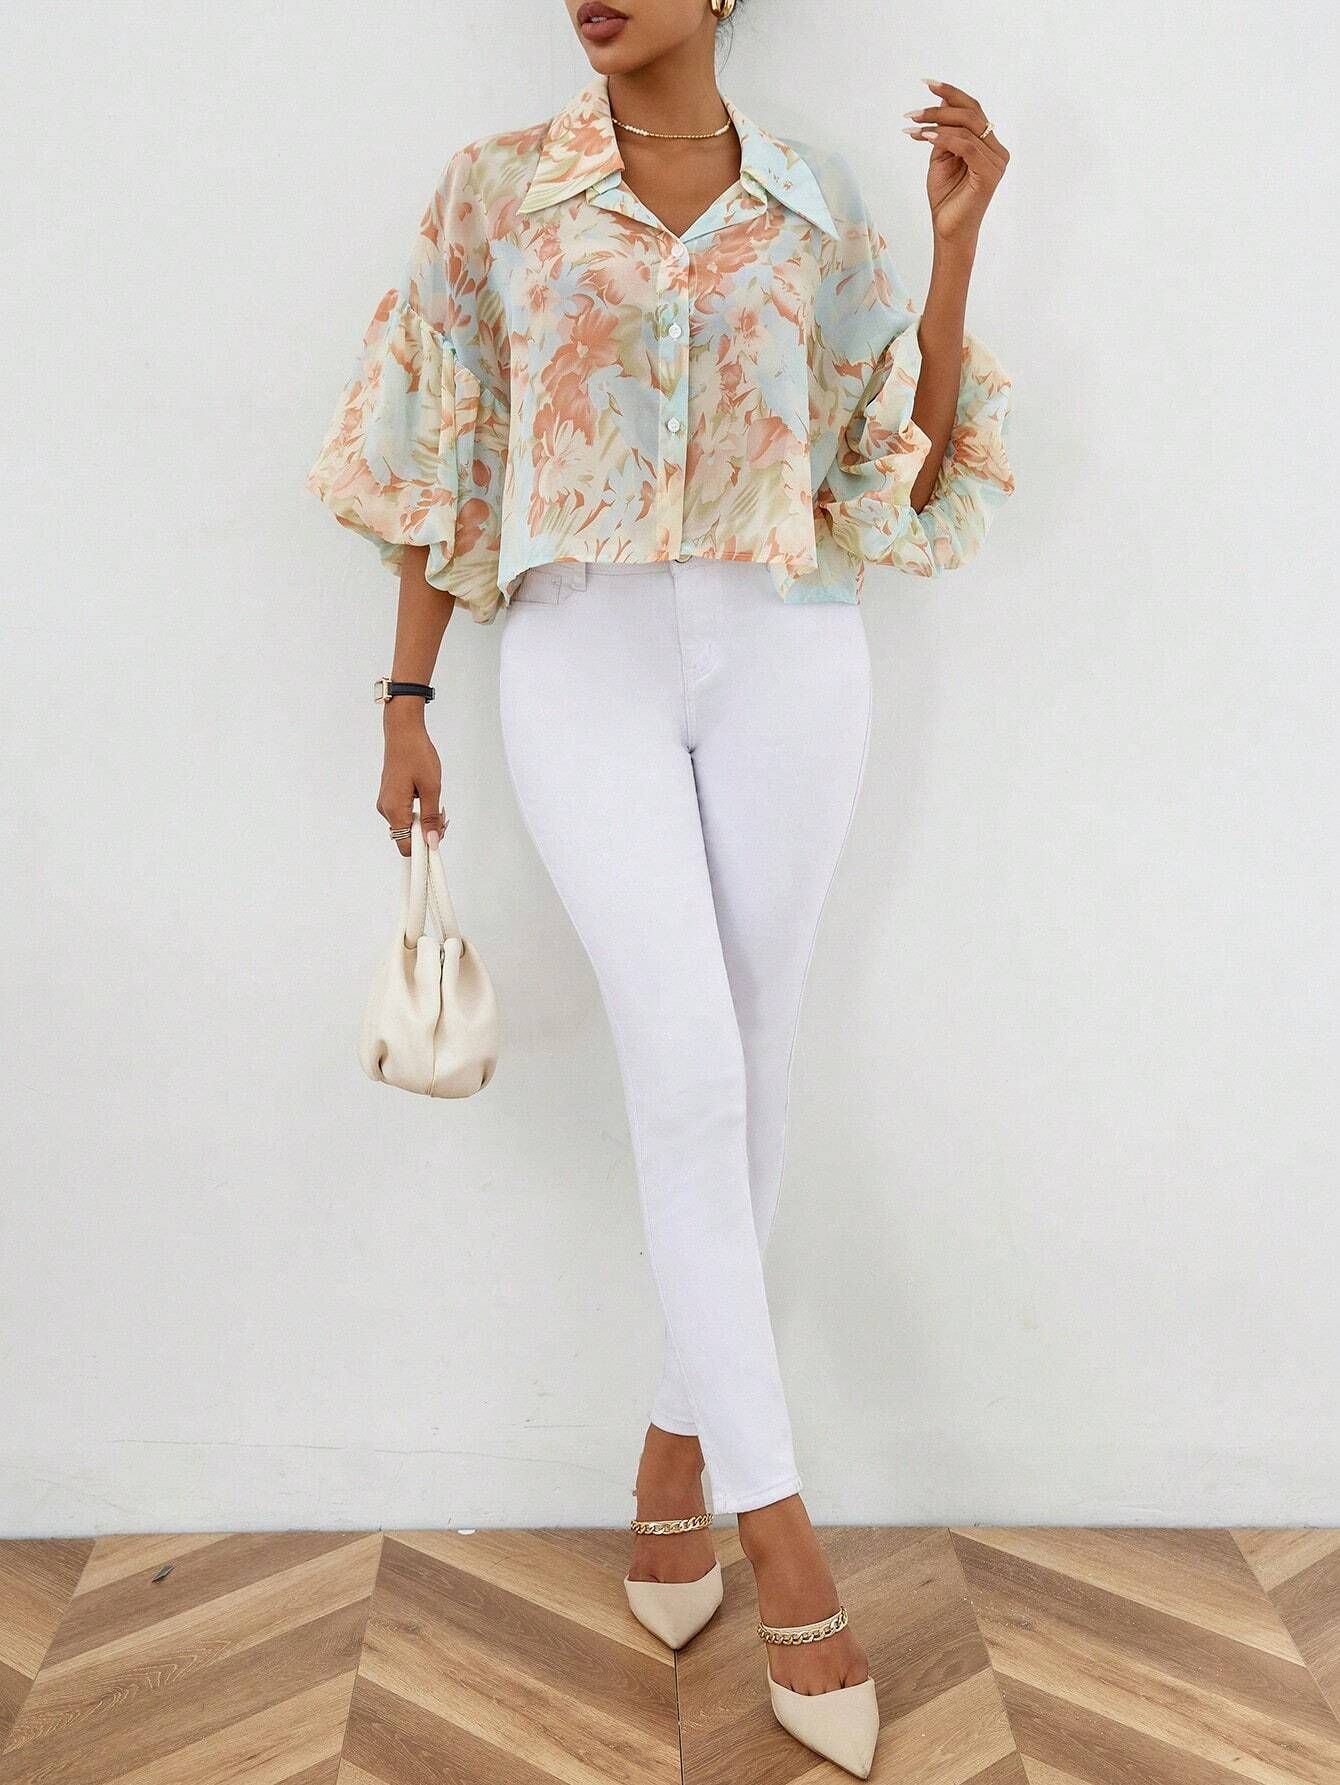 SHEIN LUNE Allover Floral Print Puff Sleeve Shirt | SHEIN